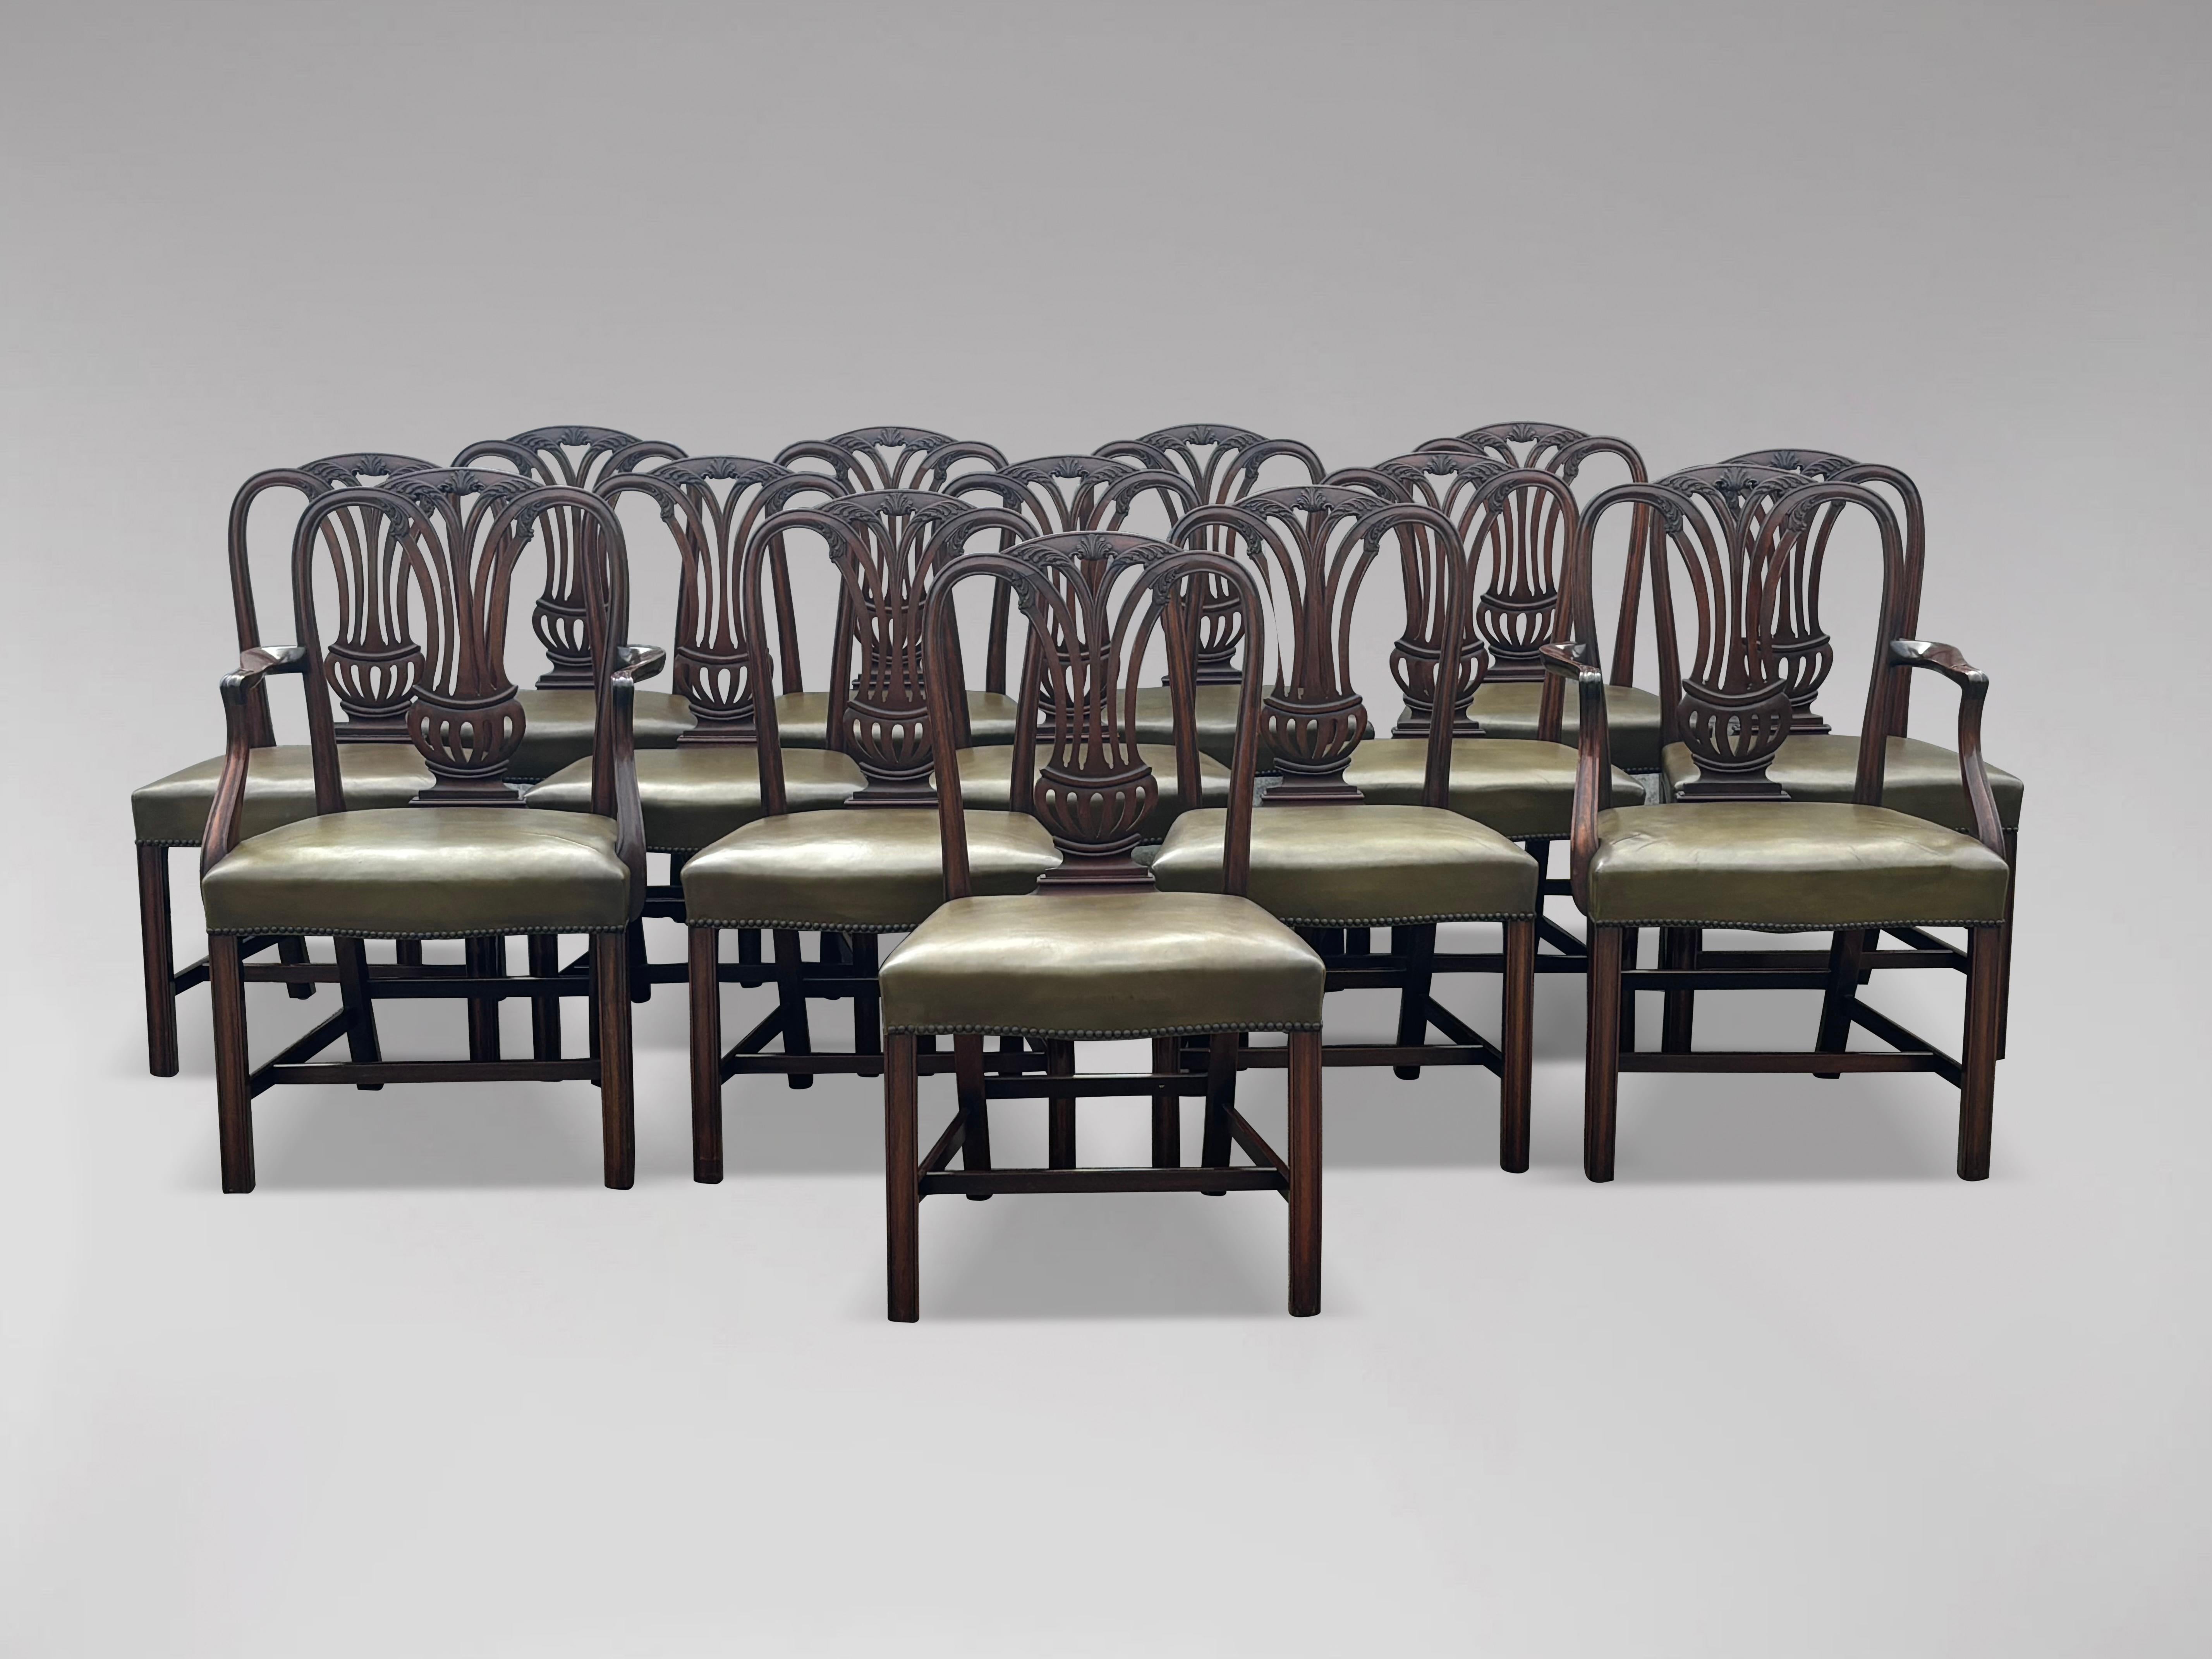 Un ensemble de 14 chaises de salle à manger géorgiennes en acajou, de bonne couleur et en bon état, avec de larges sièges en cuir rembourrés, de profil généreux, permettant une assise confortable. Ce grand ensemble de 2 fauteuils et de 12 chaises de